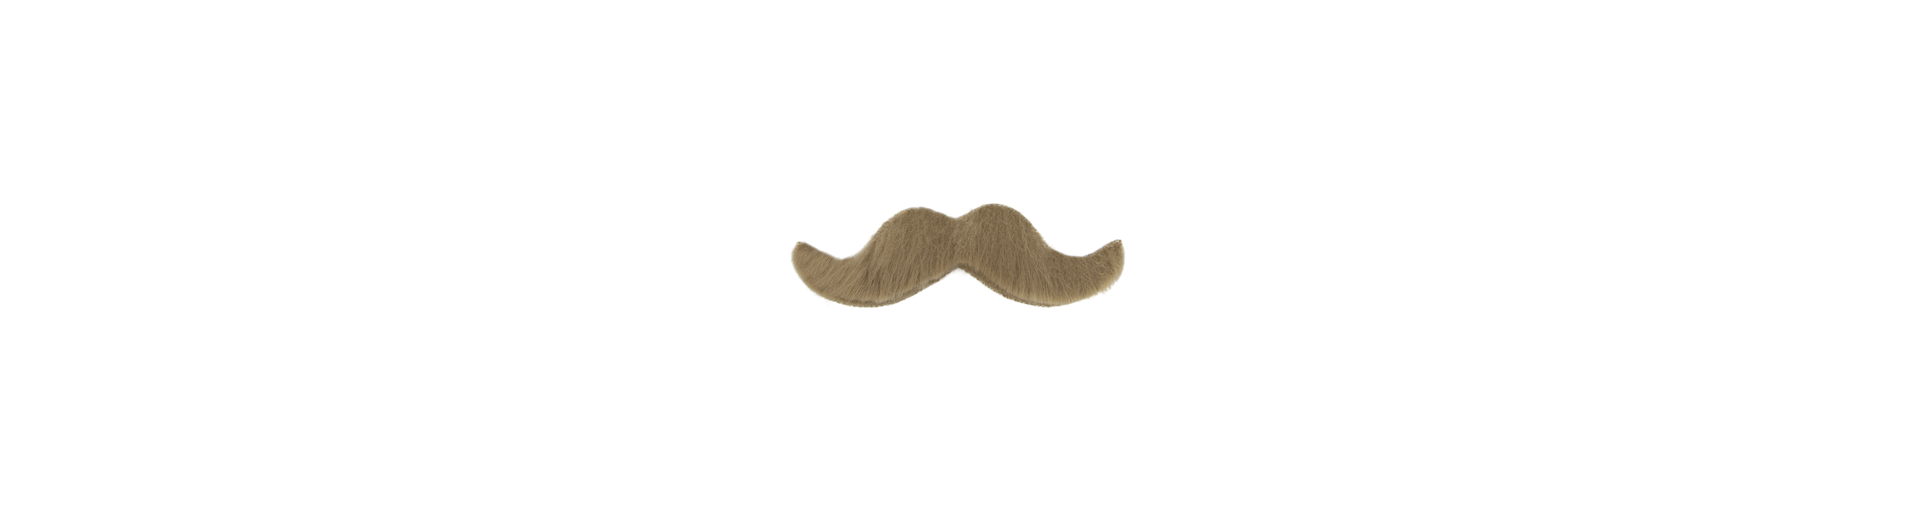 Moustaches